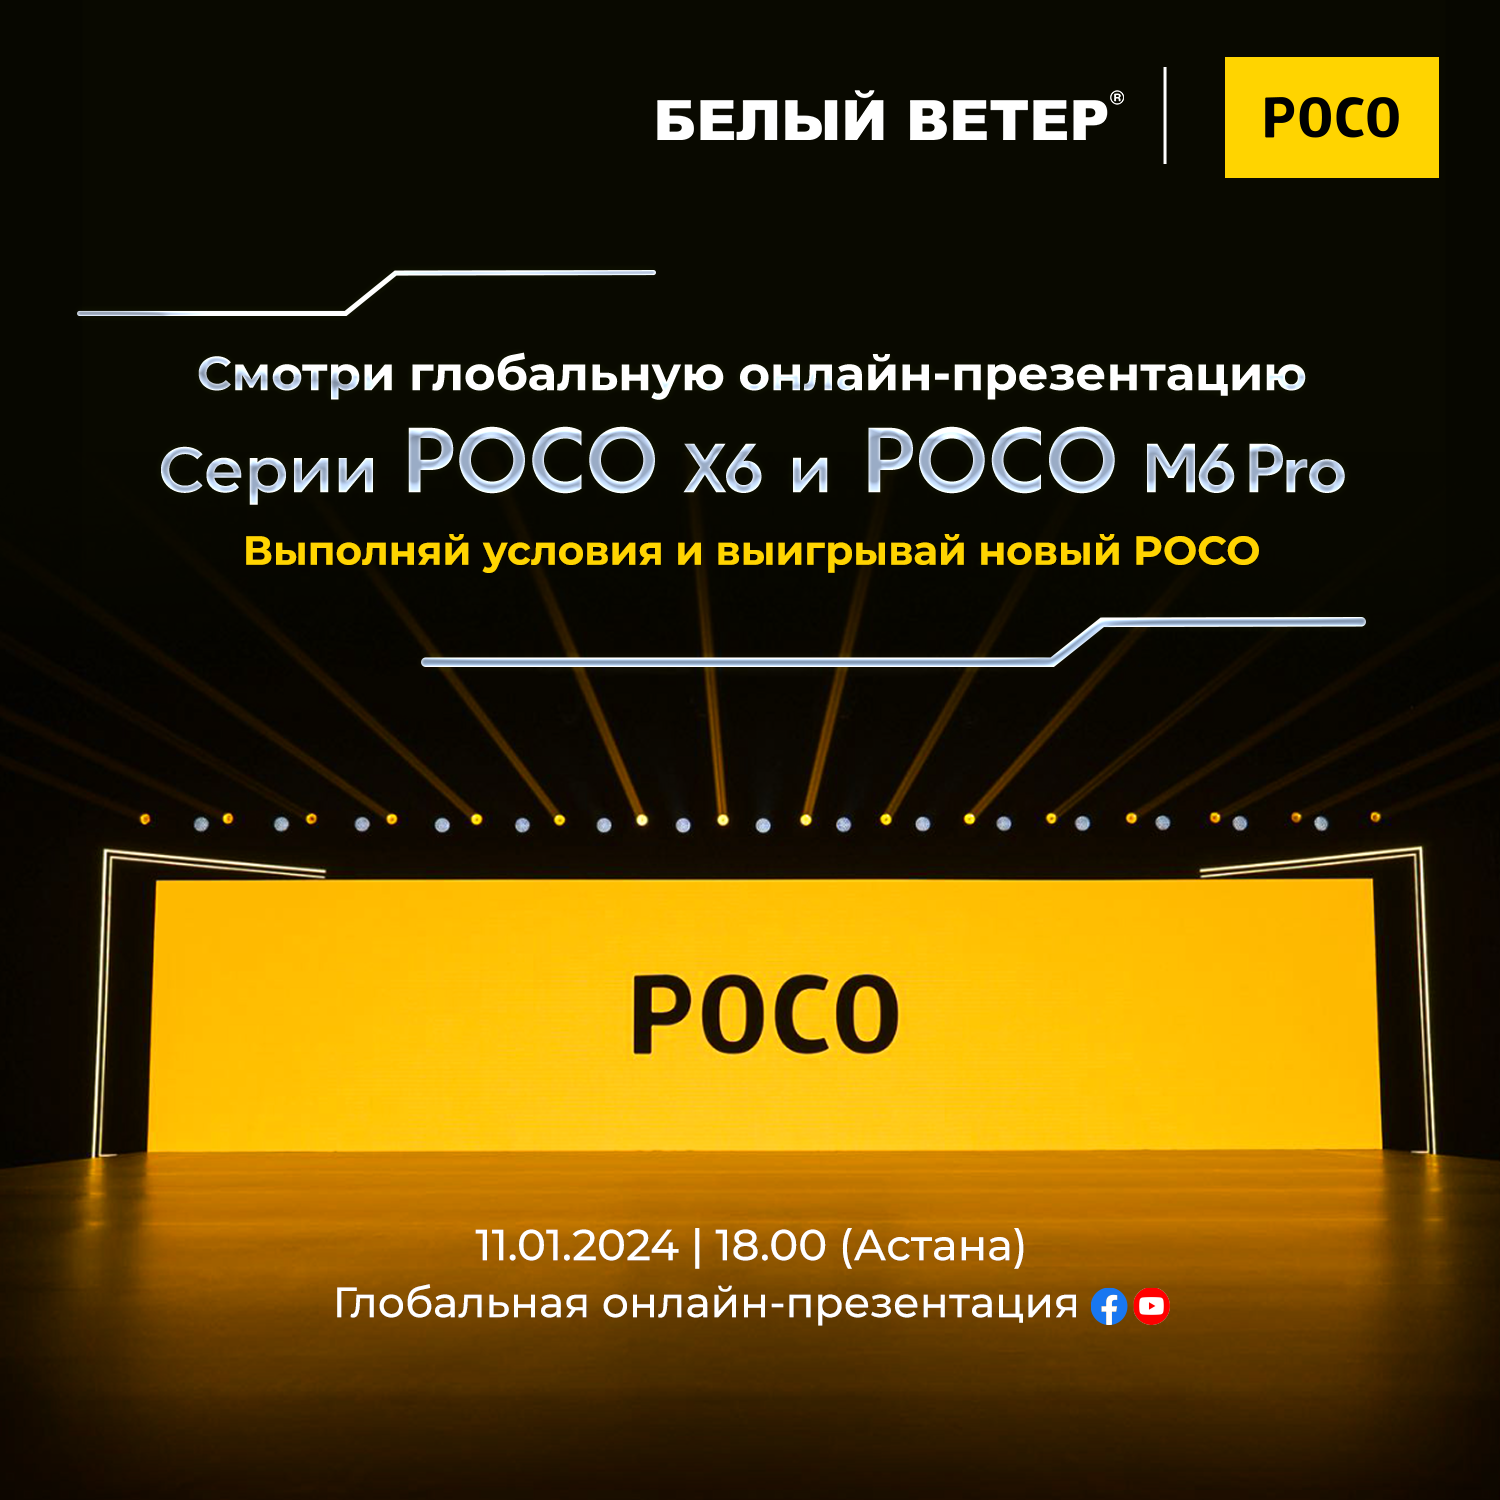 Глобальная презентация серии POCO X6 и POCO M6 Pro состоится 11 января